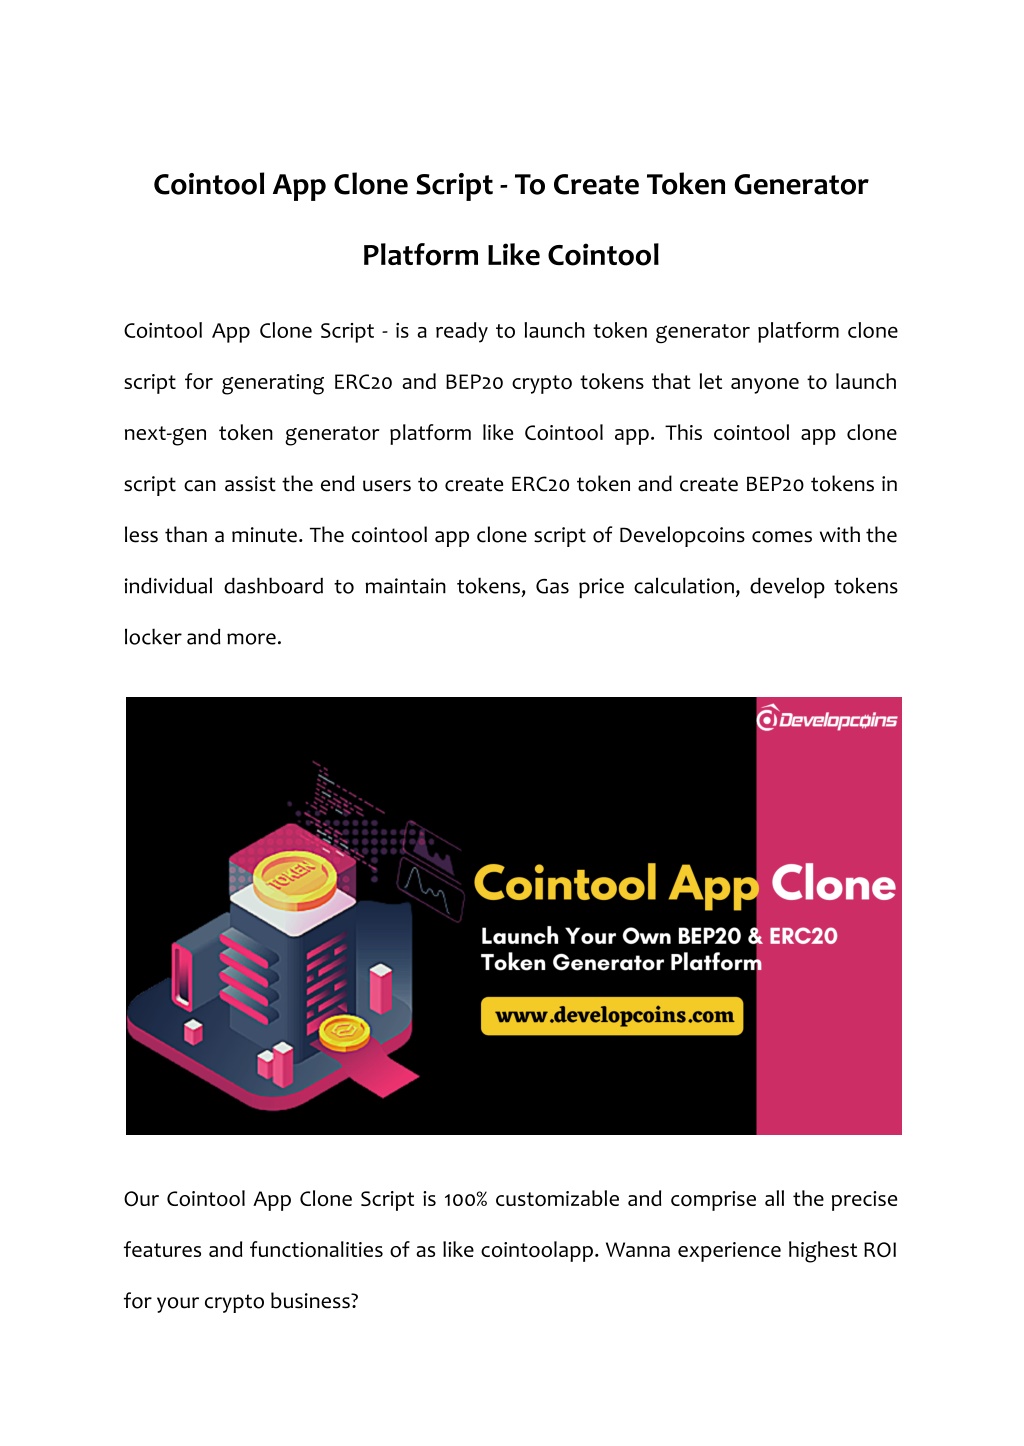 PPT - AdStar – OLX Clone Script, OLX App Clone